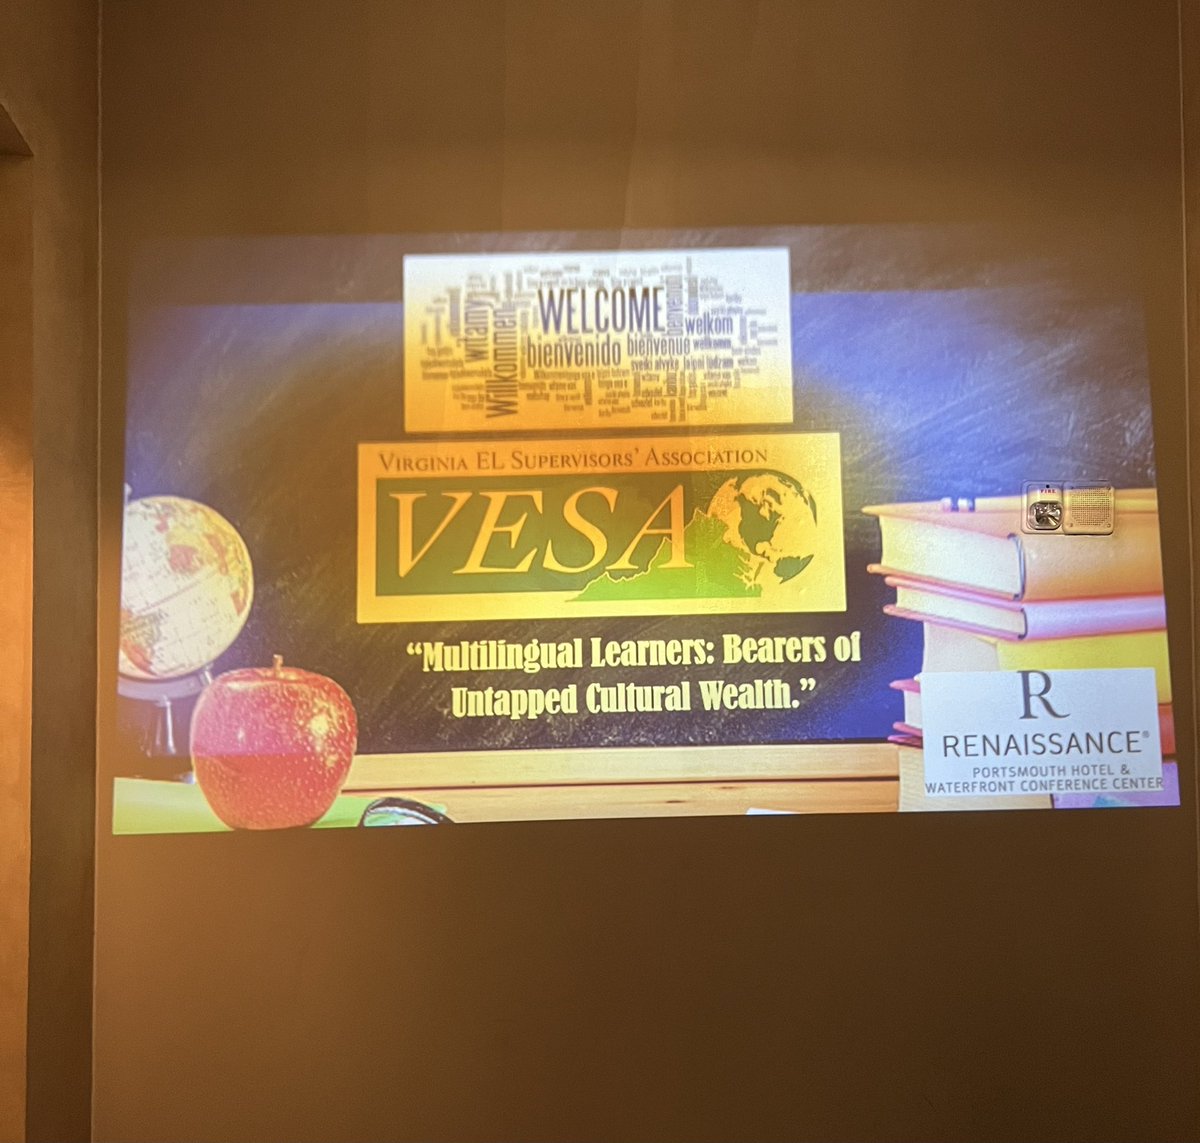 حان الوقت لبعض التعاون على مستوى الولاية VESA_VA 2023. من الرائع جدًا أن تكون شخصيًا وتتعلم وتتعاون وتضحك معًا. https://t.co/vTkCKDH9s9